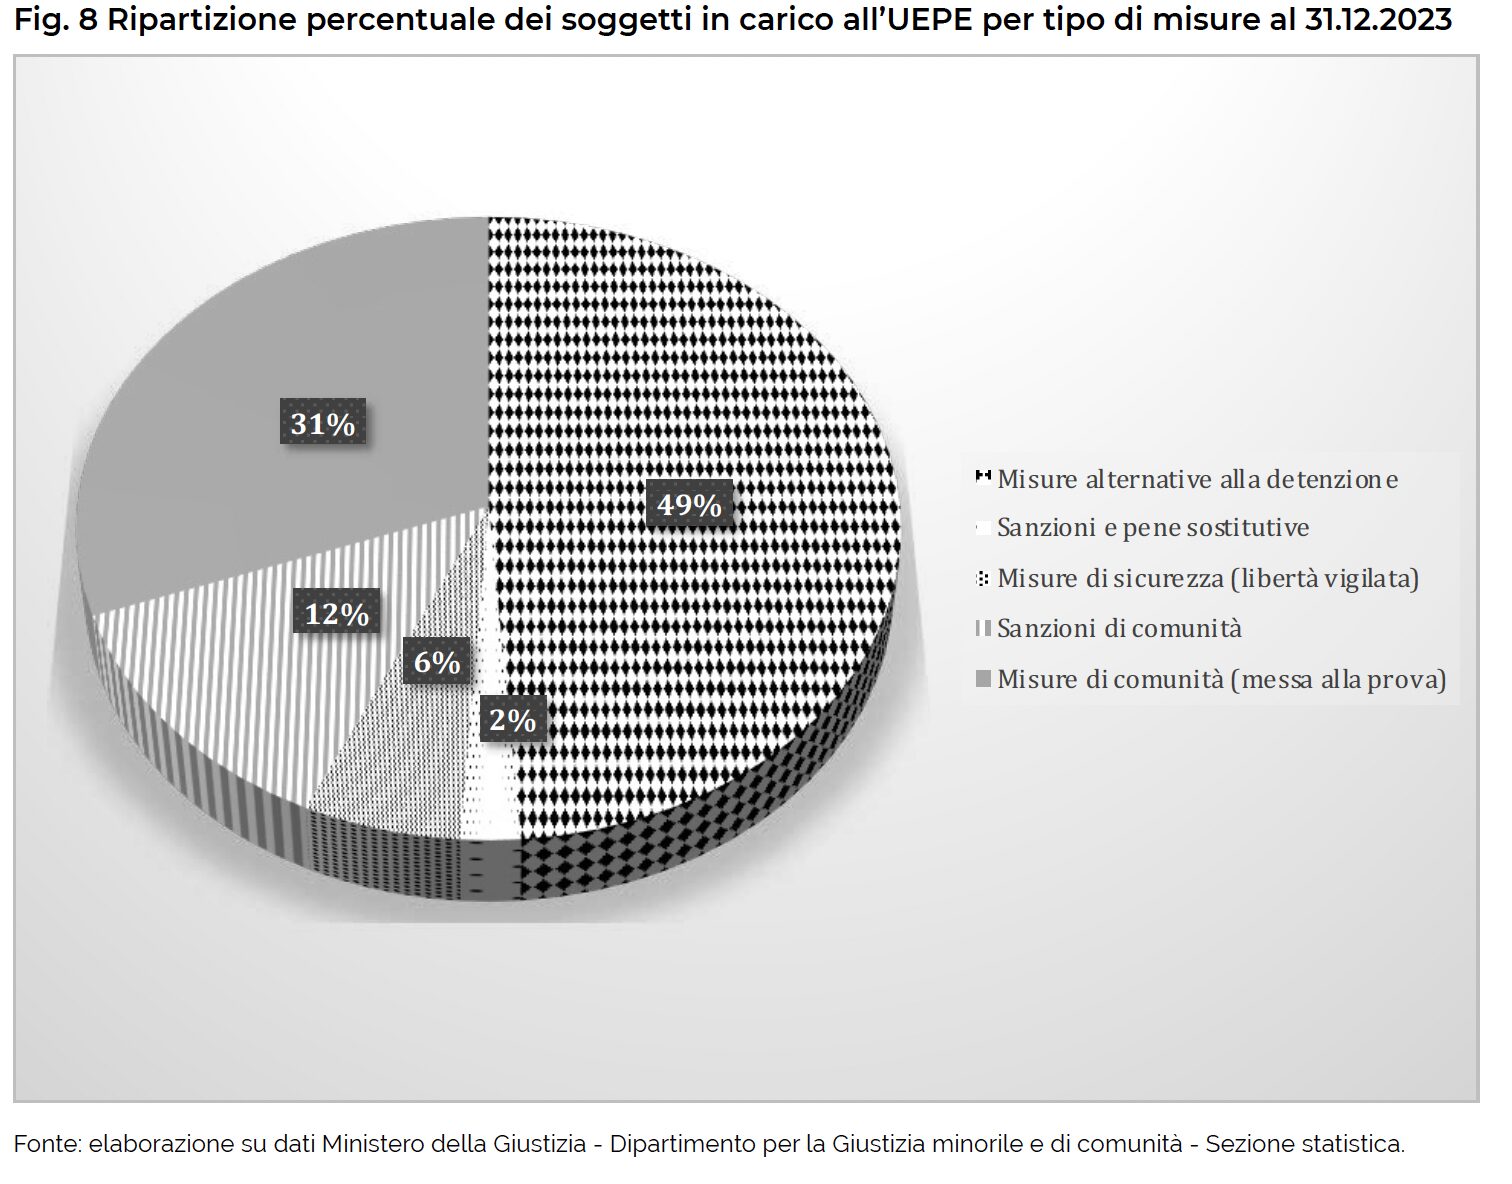 Fig. 8 Ripartizione percentuale dei soggetti in carico all’UEPE per tipo di misure al 31.12.2023